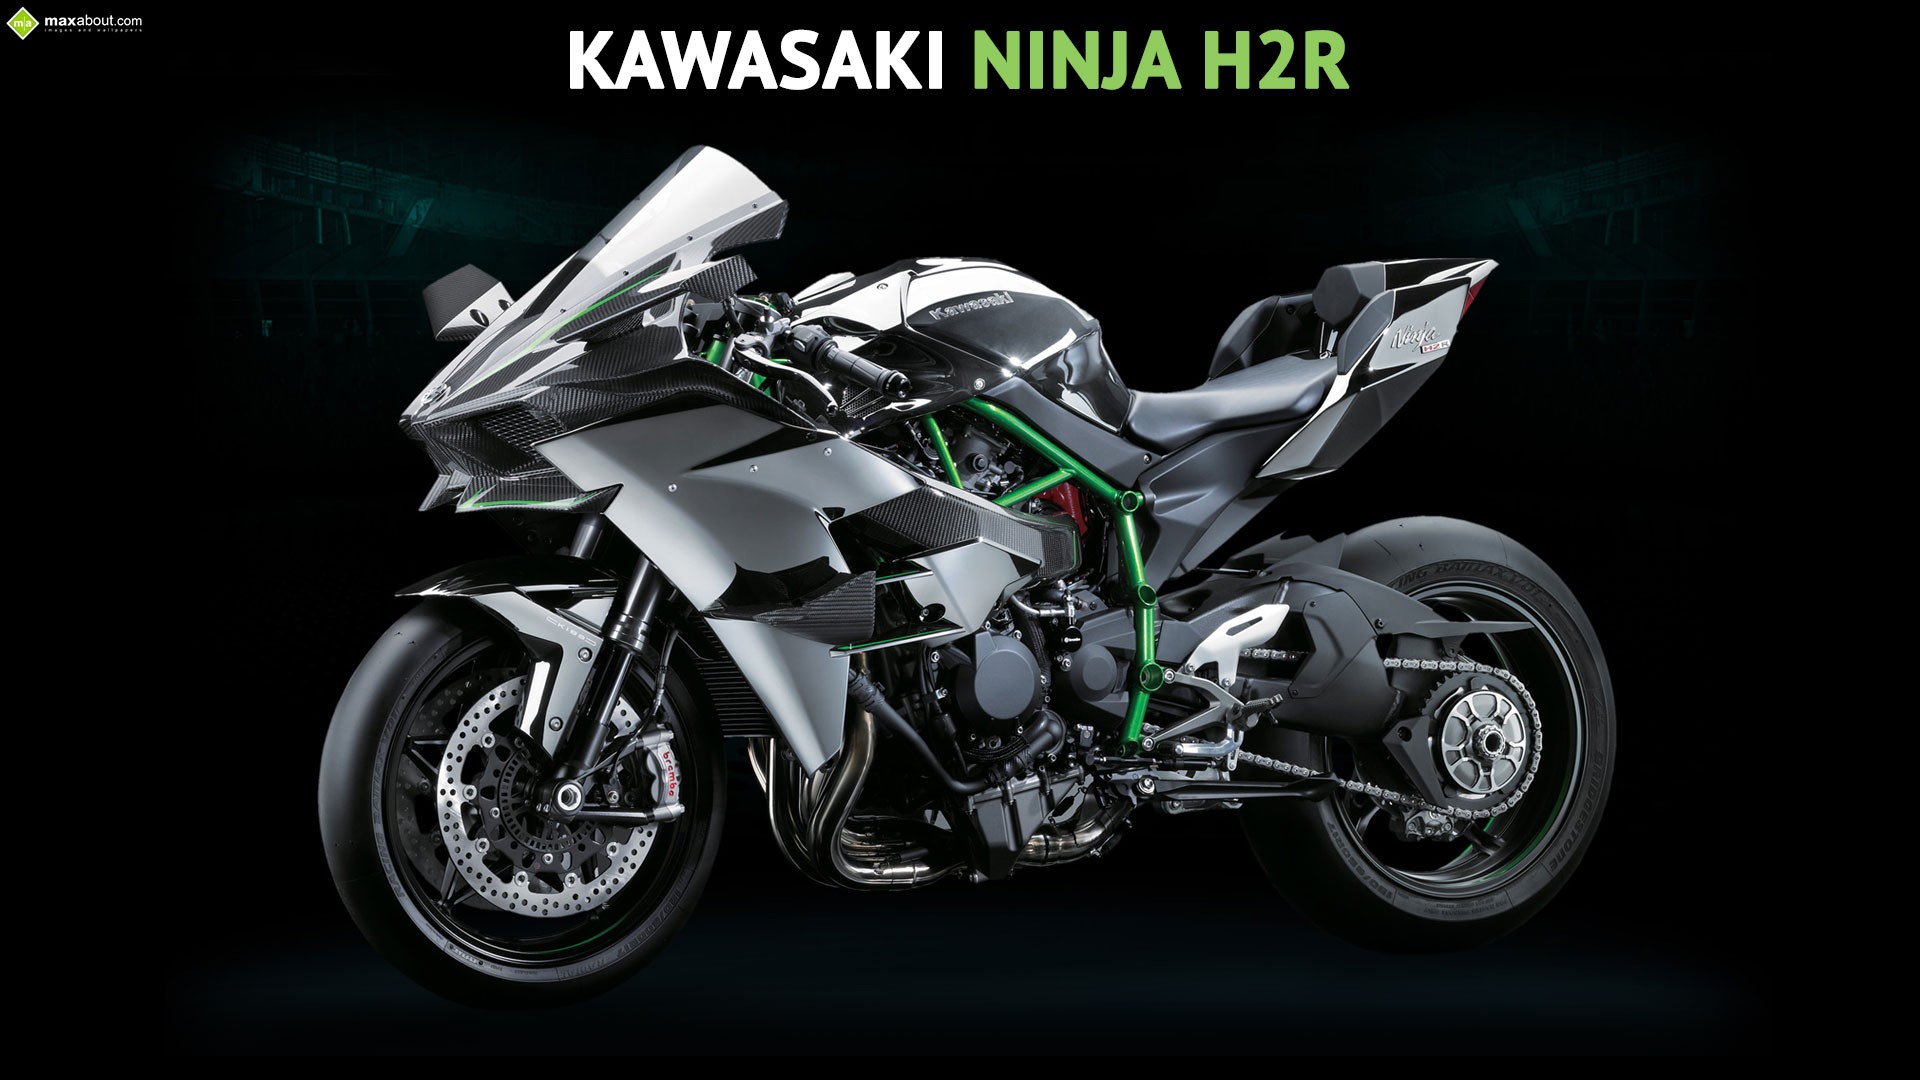 General 1920x1080 motorcycle Kawasaki Kawasaki ninja Kawasaki Ninja H2R simple background black background vehicle Japanese motorcycles